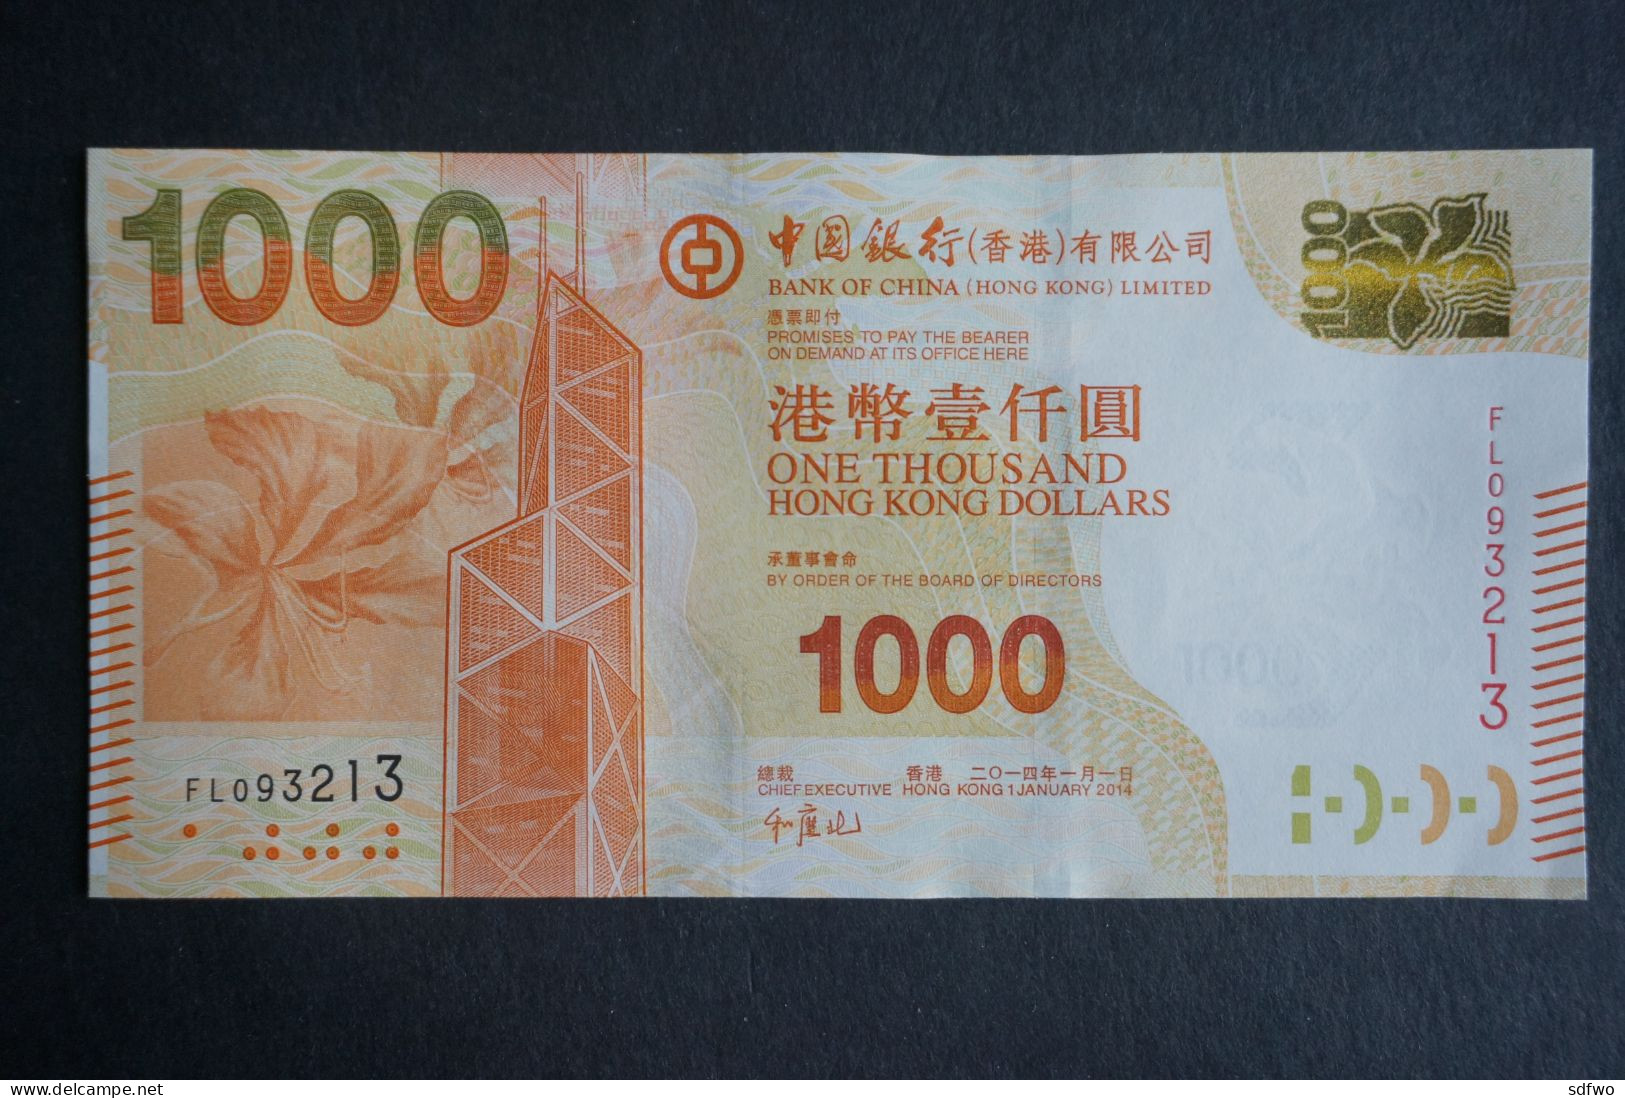 (M) HONG KONG 2014 BANK OF CHINA BANKNOTES 1000 DOLLARS - #FL093213 (UNC) - Hong Kong